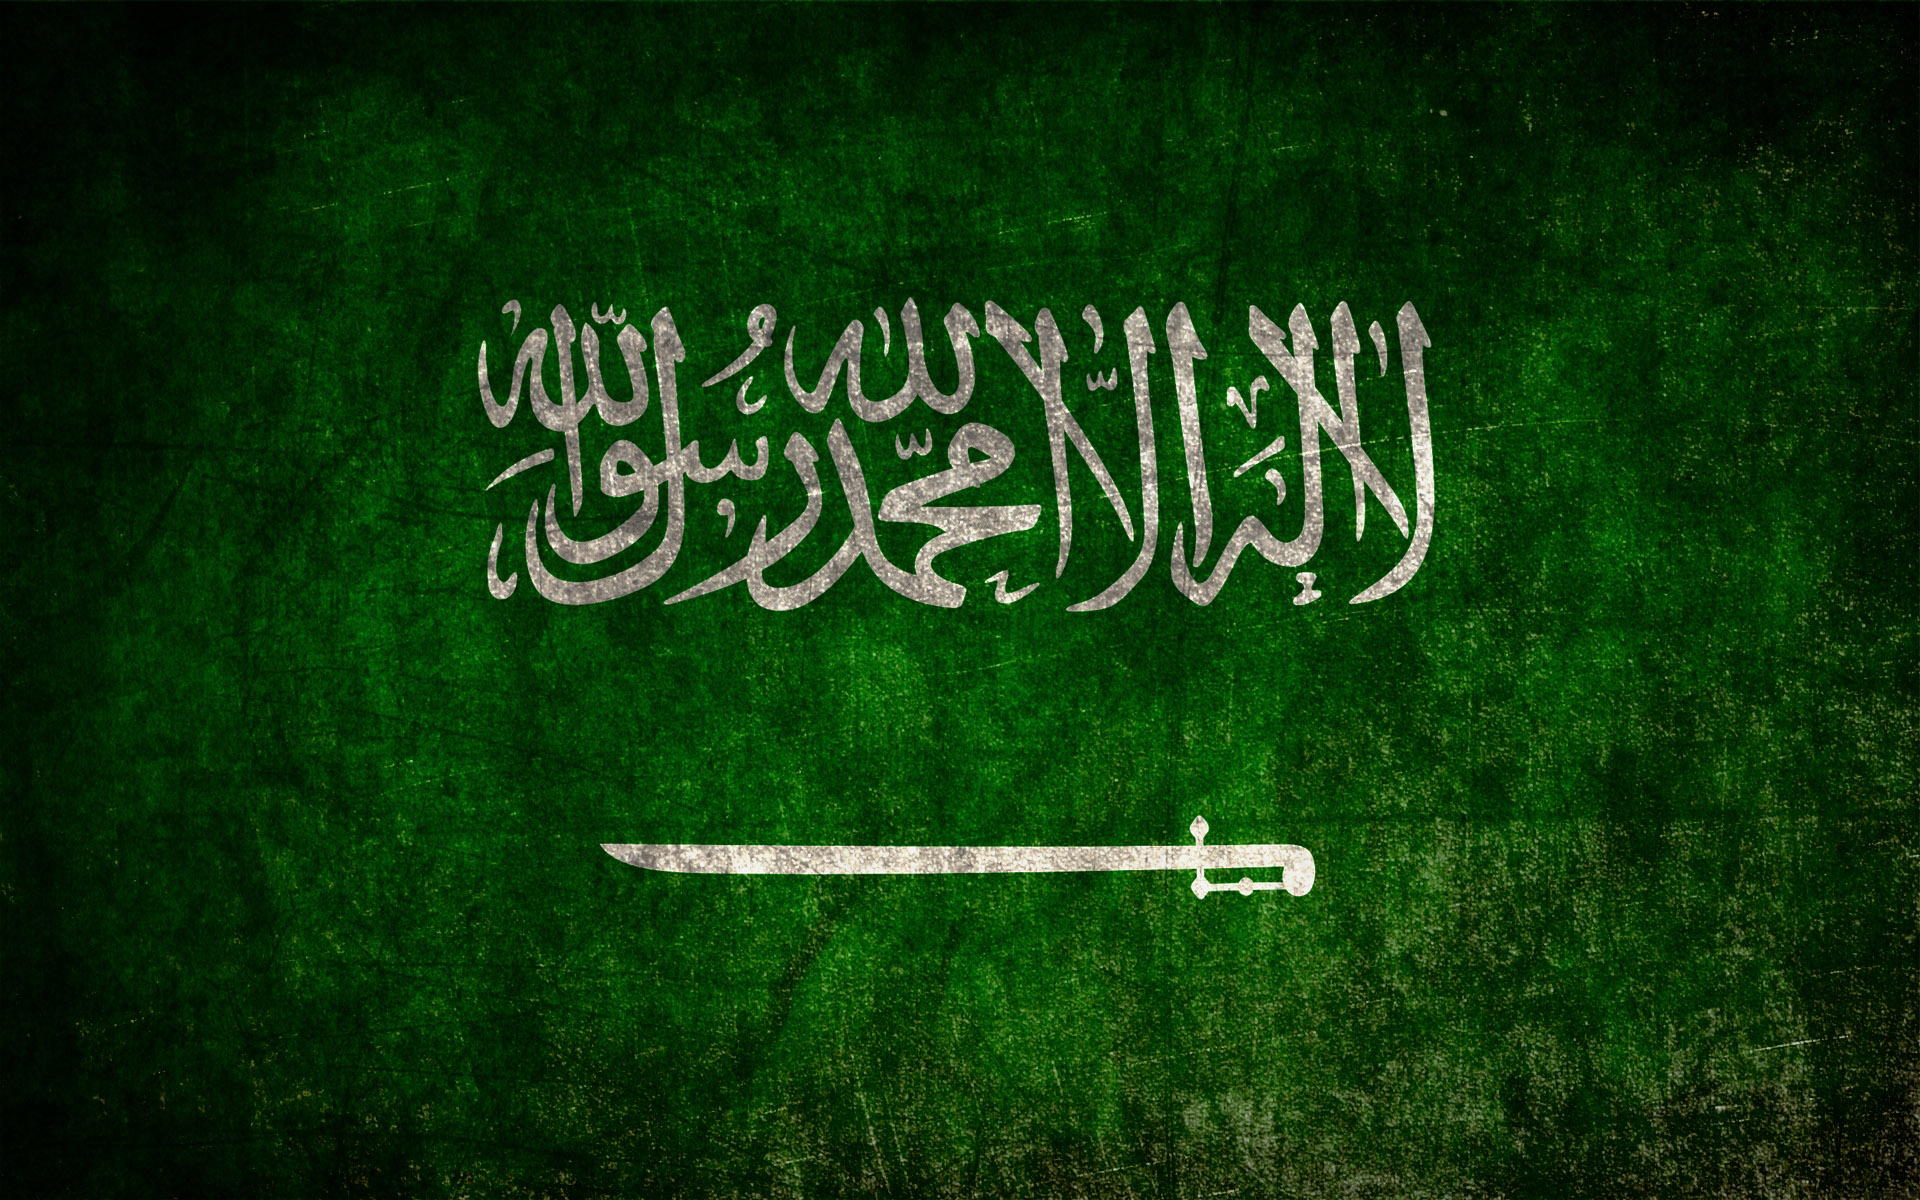 Saudi Arabia Wallpaper